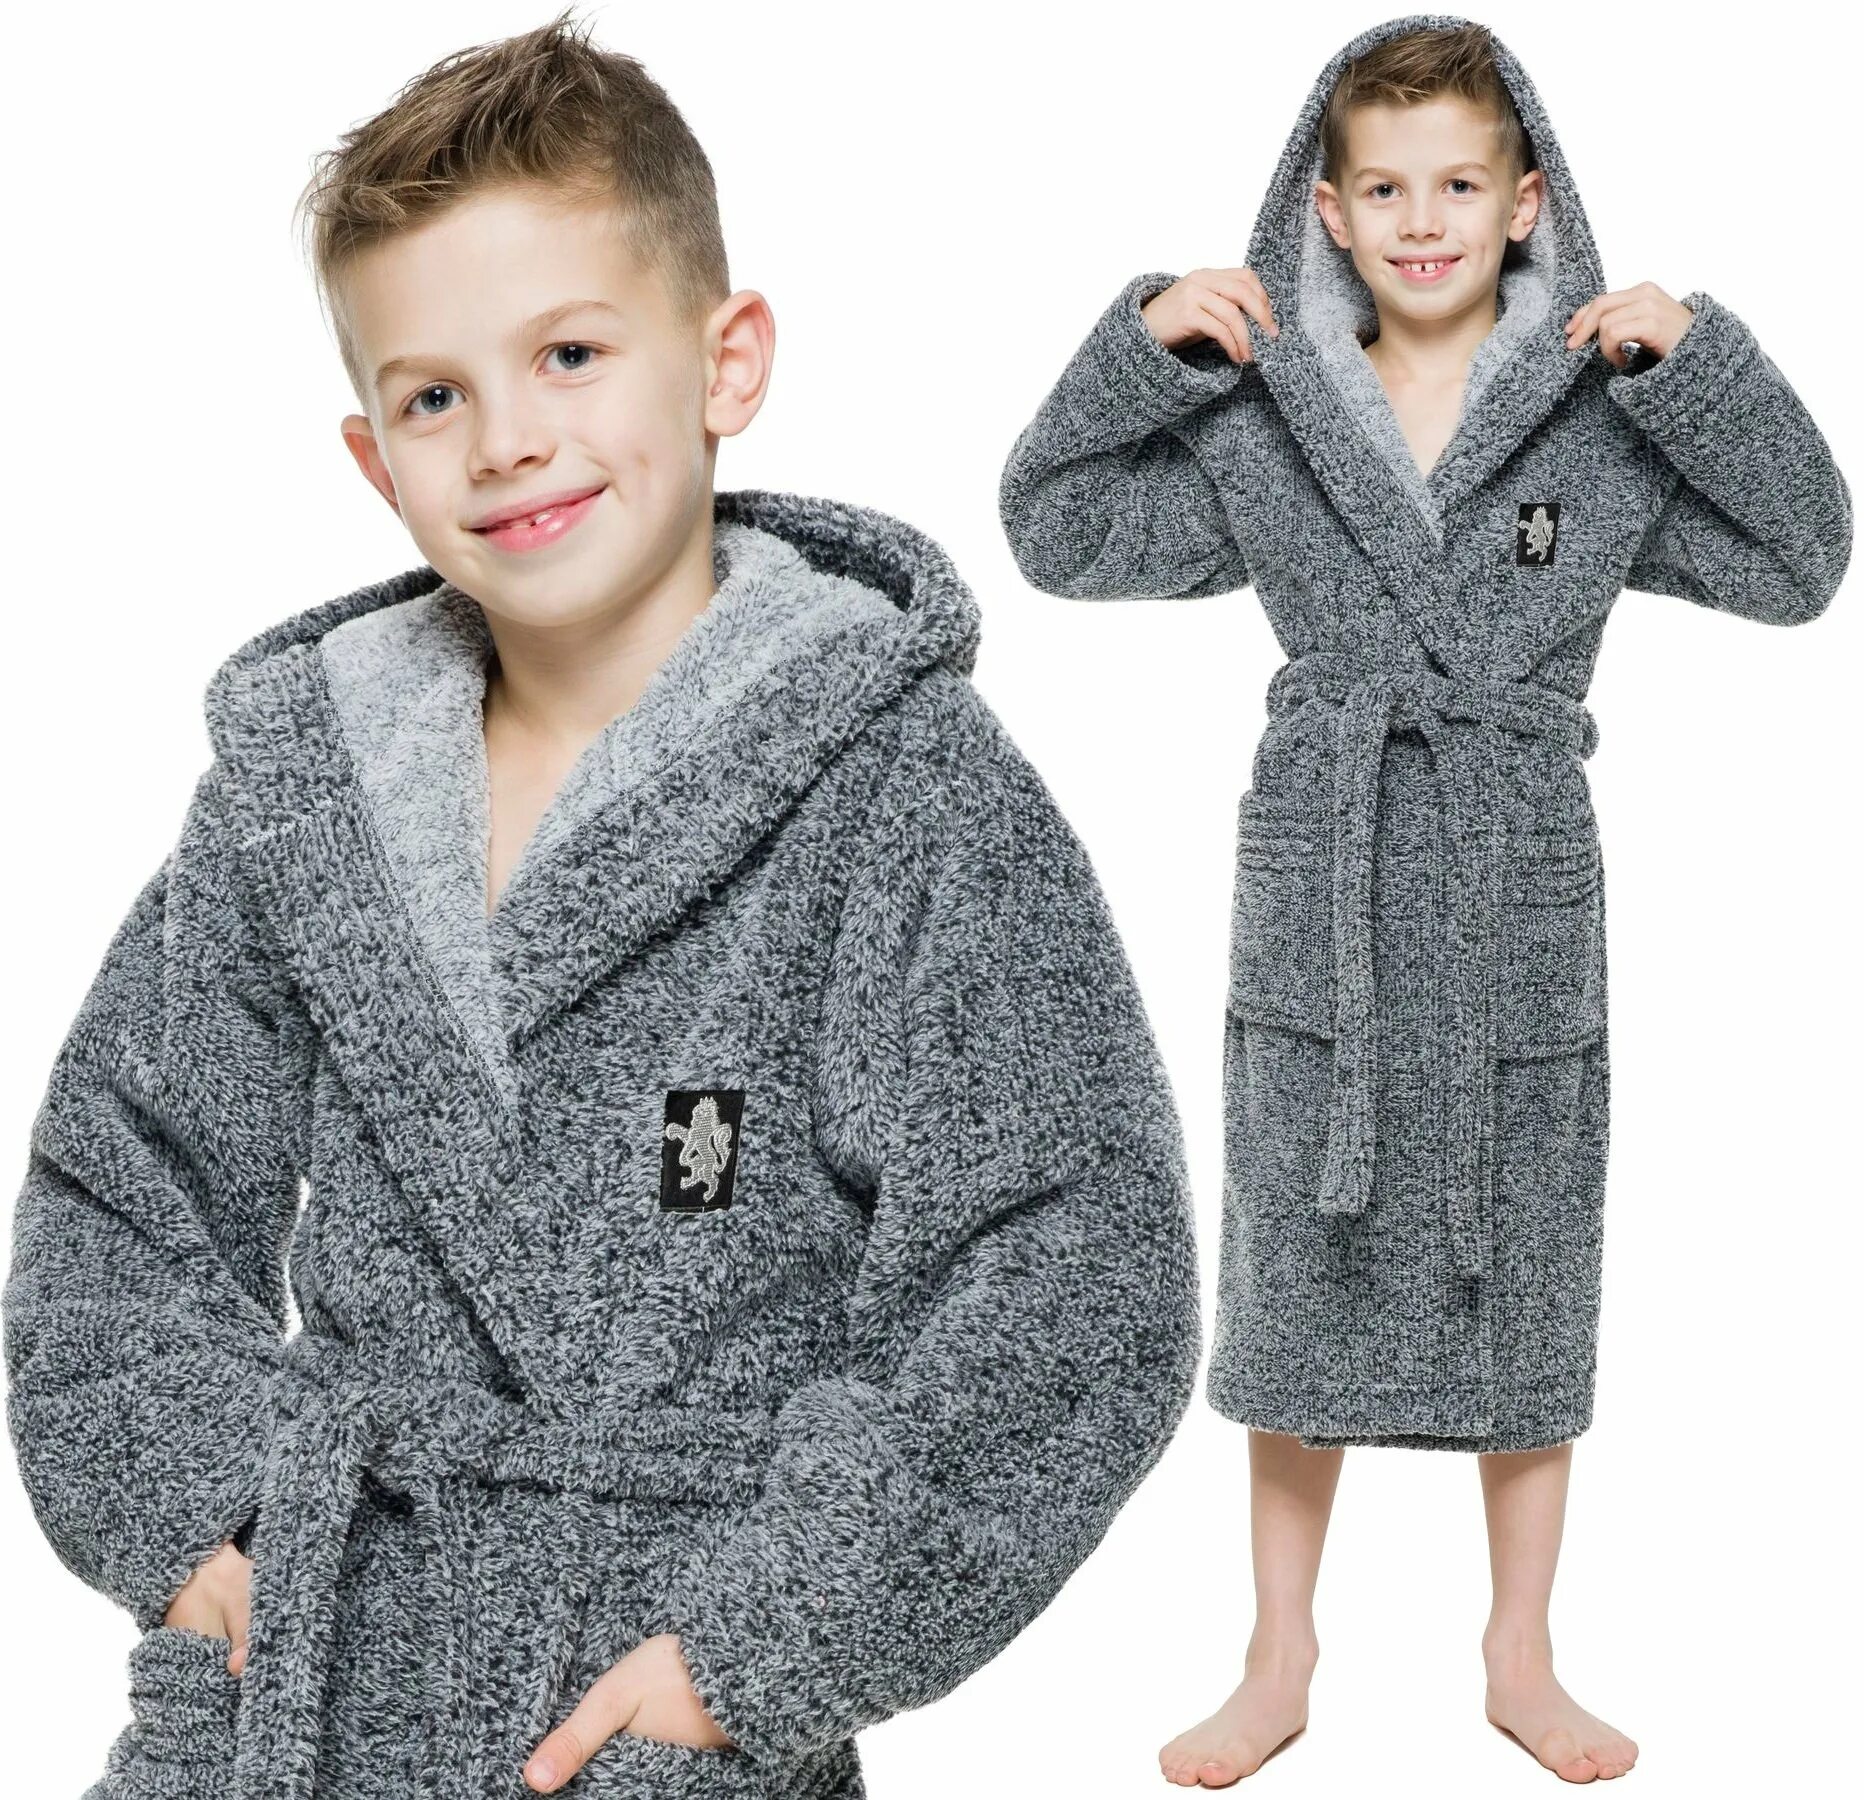 Купить халат для мальчика. Халат для мальчиков. Халат для мальчика флисовый. Детские халаты для мальчиков. Флисовые халаты для мальчиков.